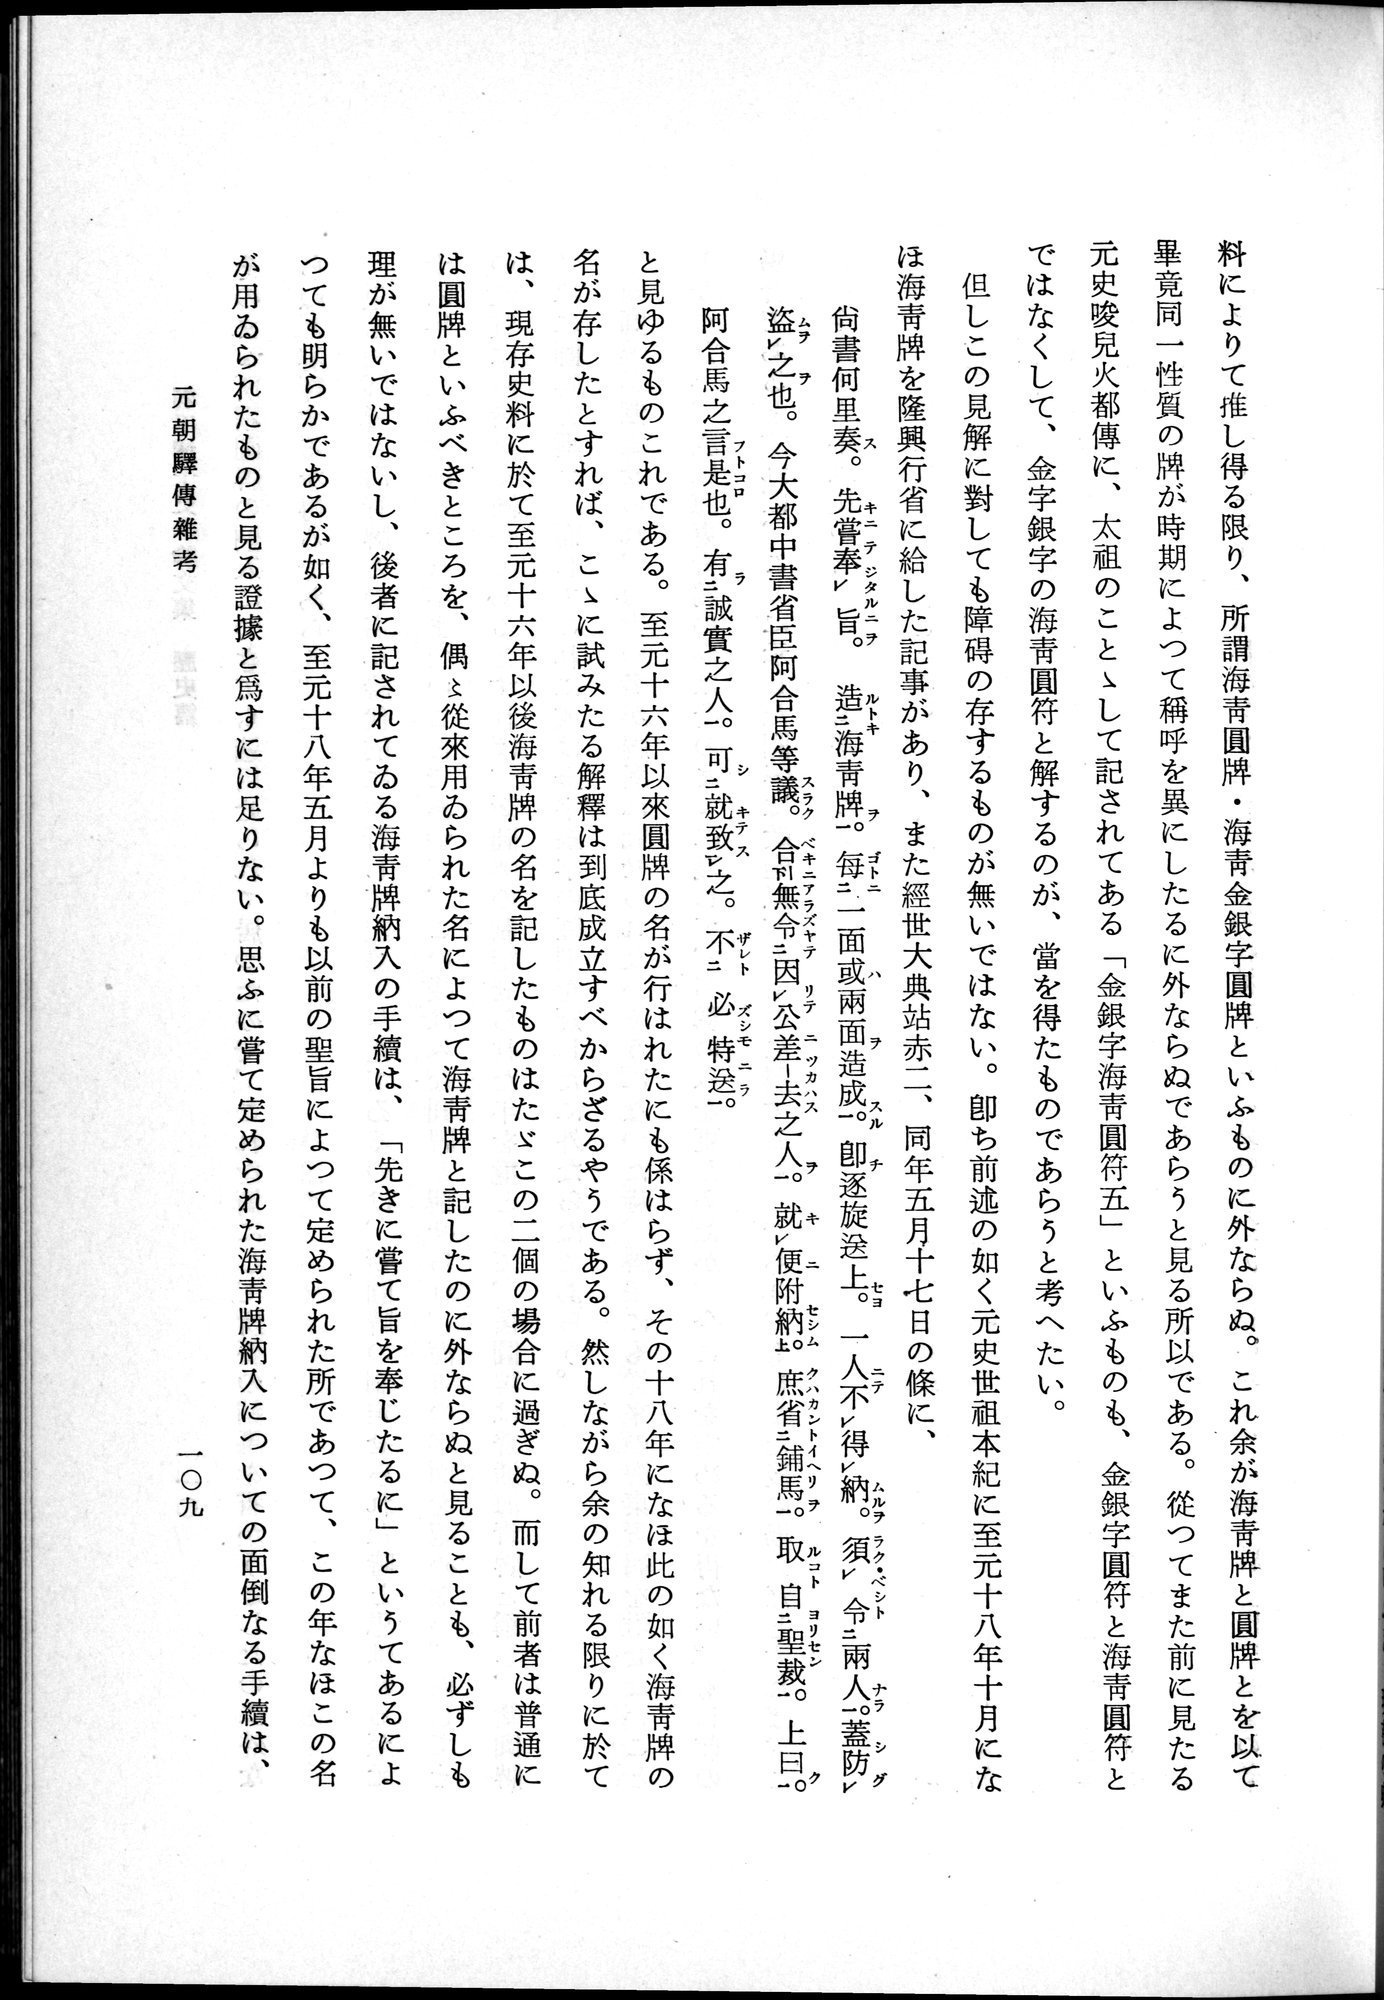 羽田博士史学論文集 : vol.1 / Page 147 (Grayscale High Resolution Image)